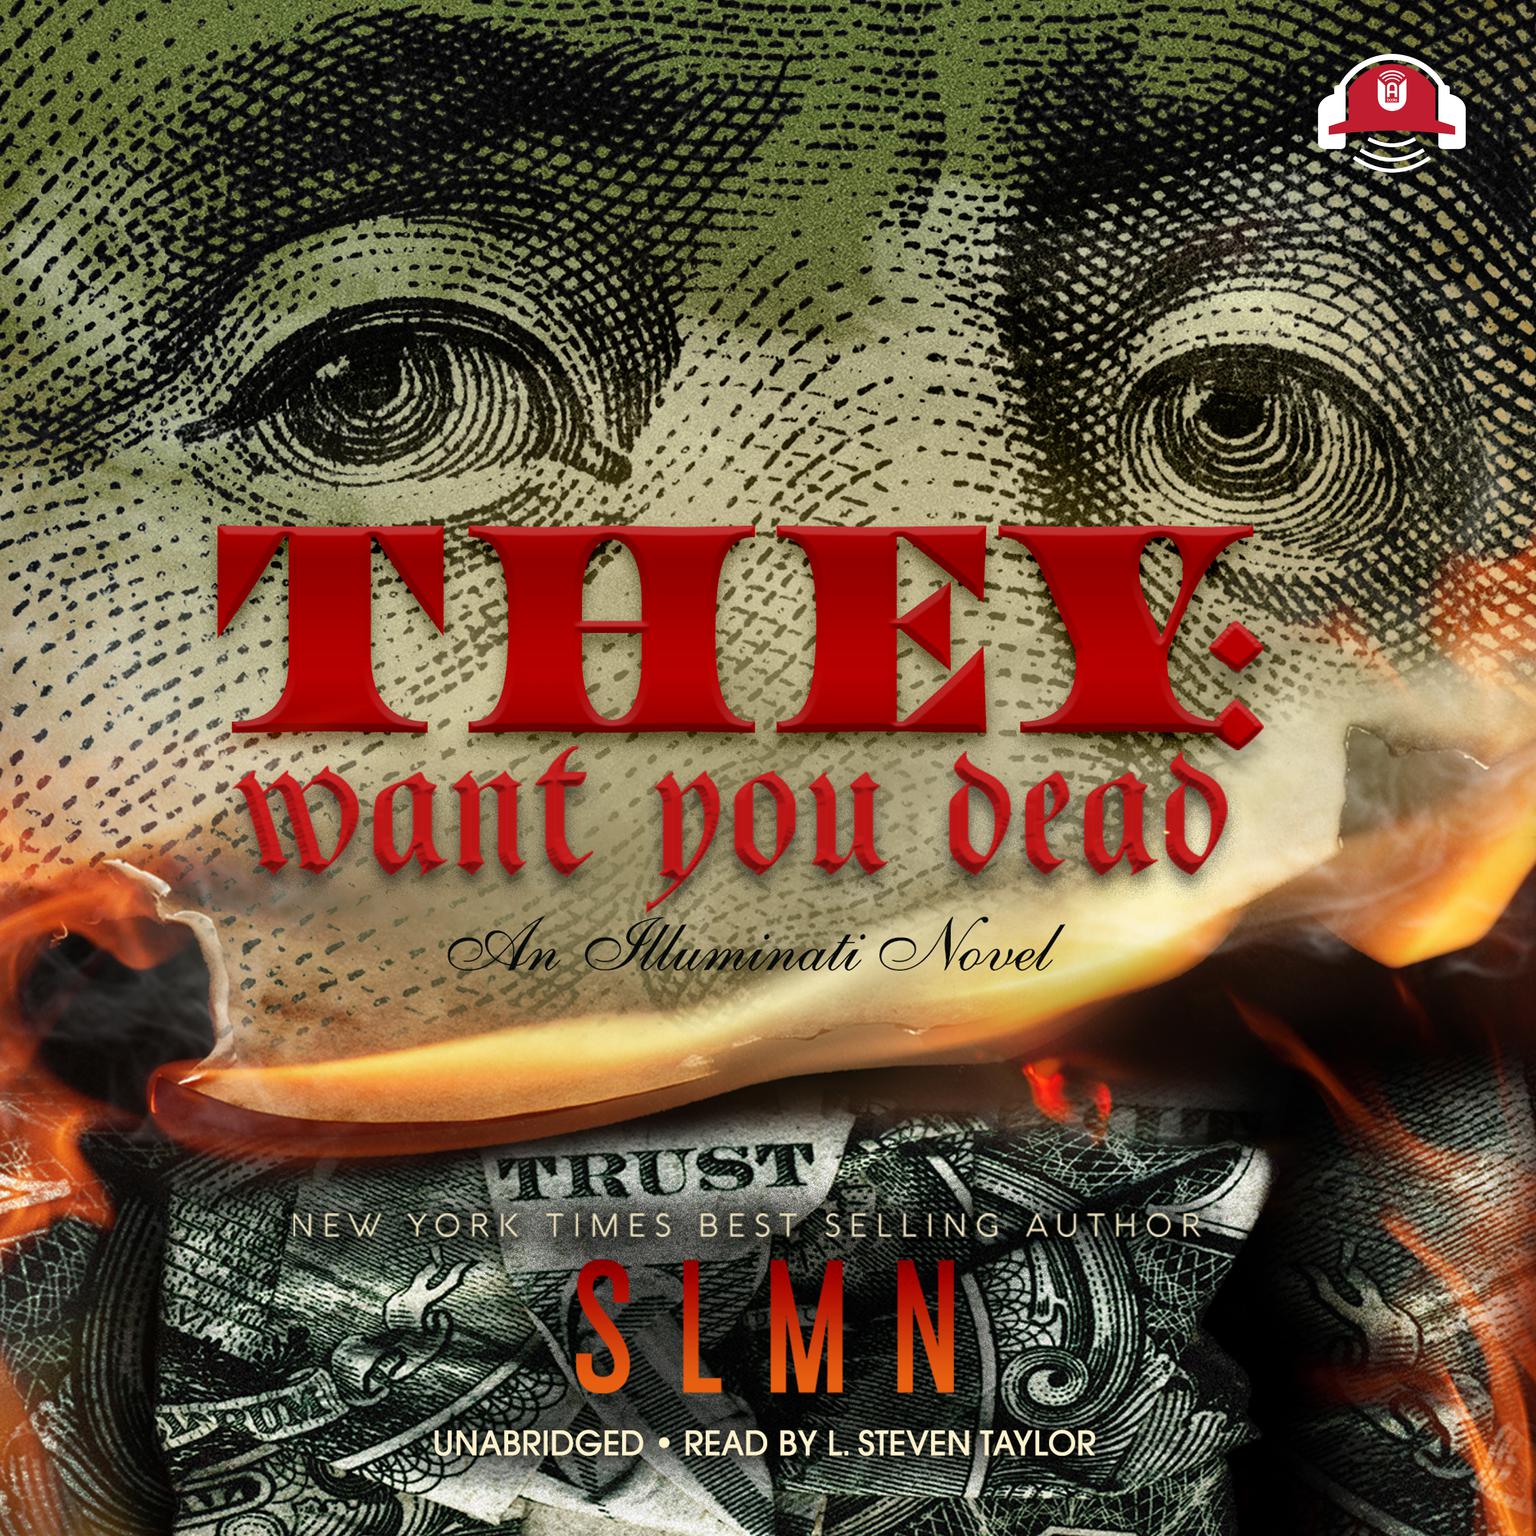 They: Want You Dead: An Illuminati Novel Audiobook, by SLMN